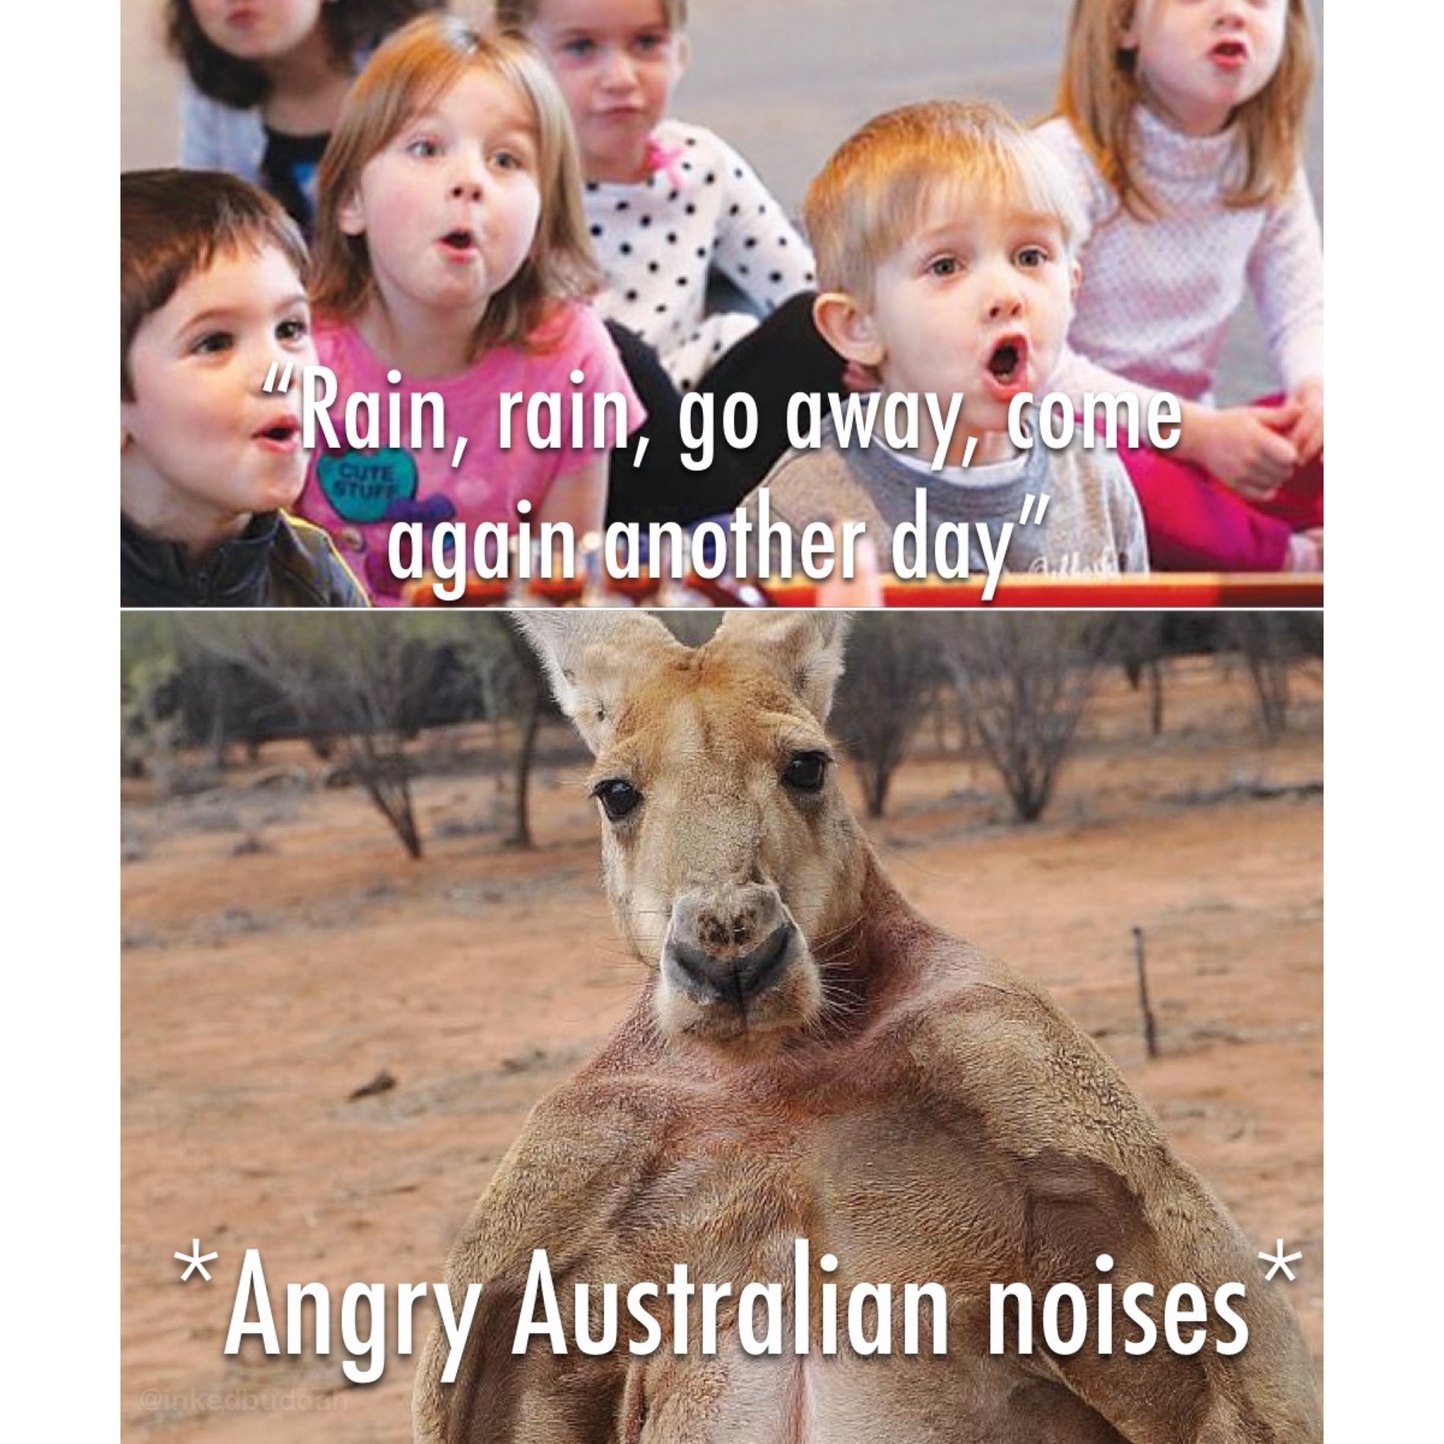 Aussie Aussie aussie - meme